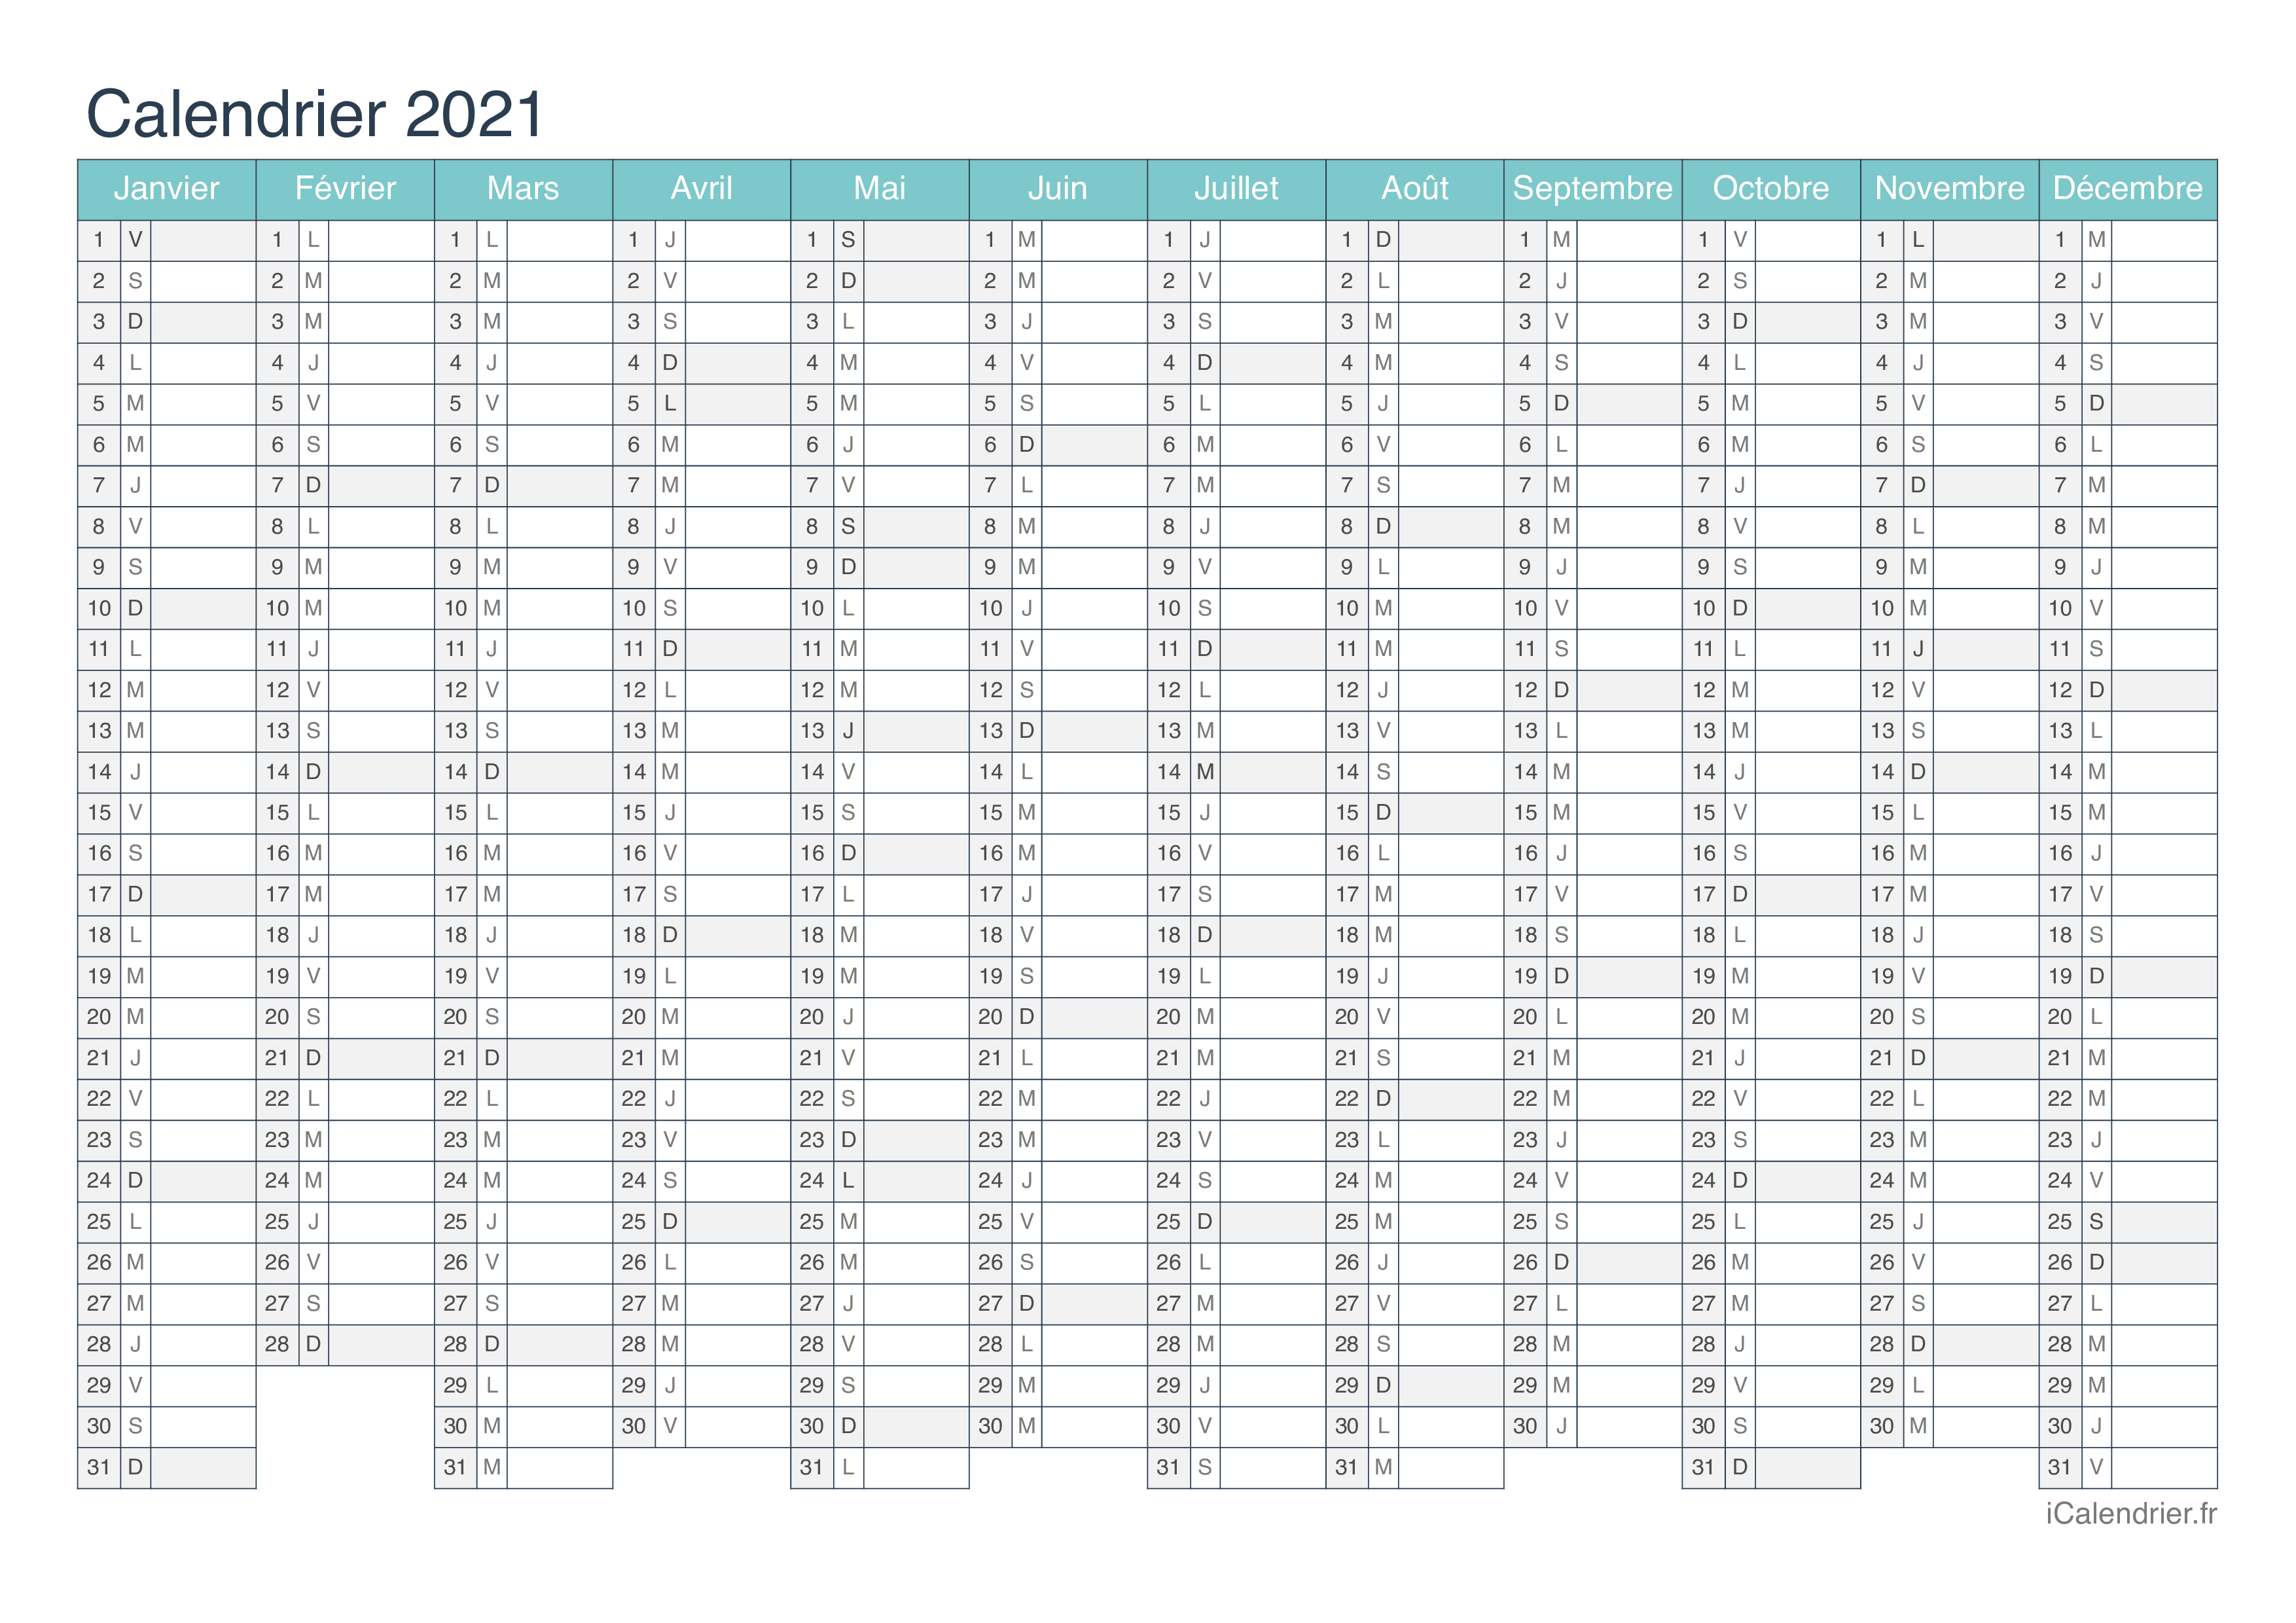 Calendrier 2021 à Compléter Calendrier 2021 à imprimer PDF et Excel   iCalendrier